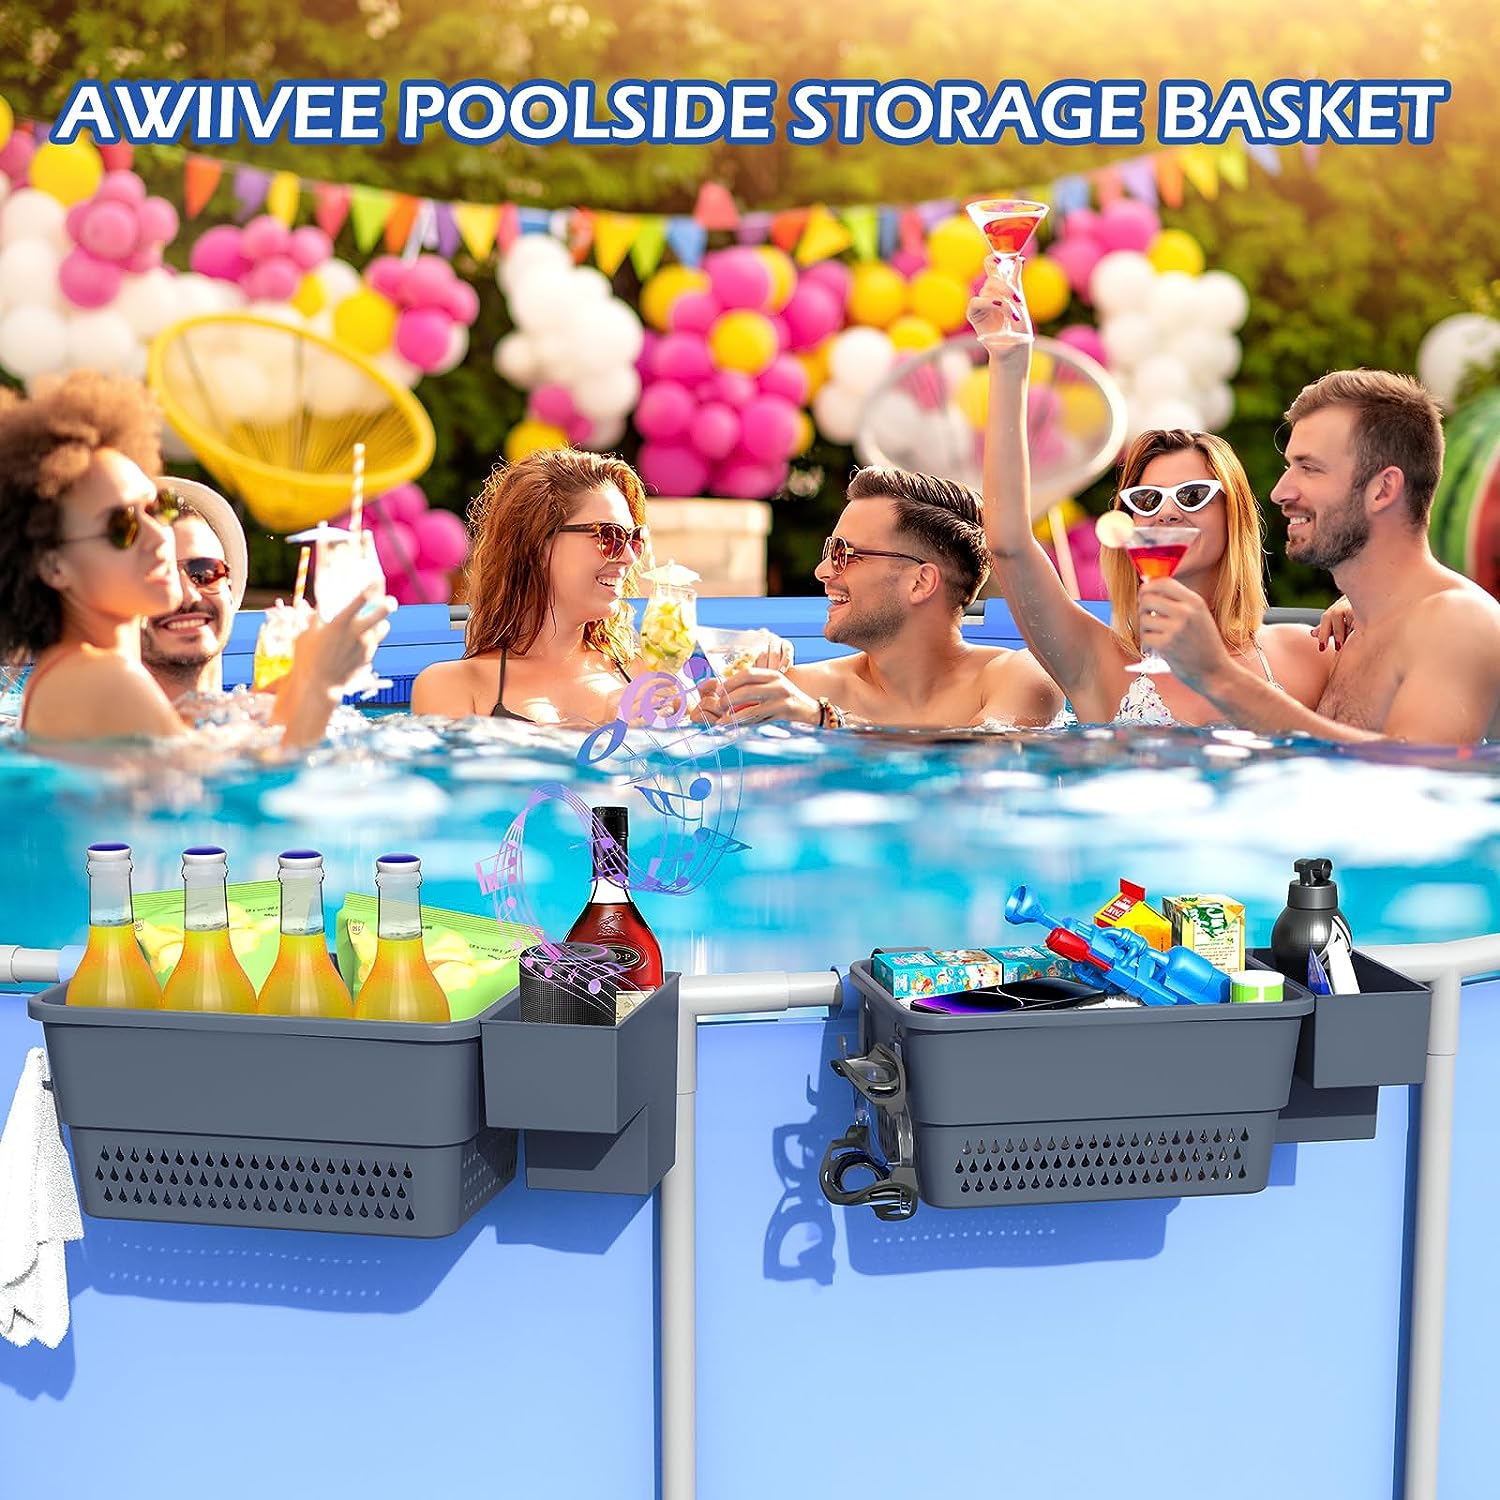 Awiivee Poolside Storage Basket Review